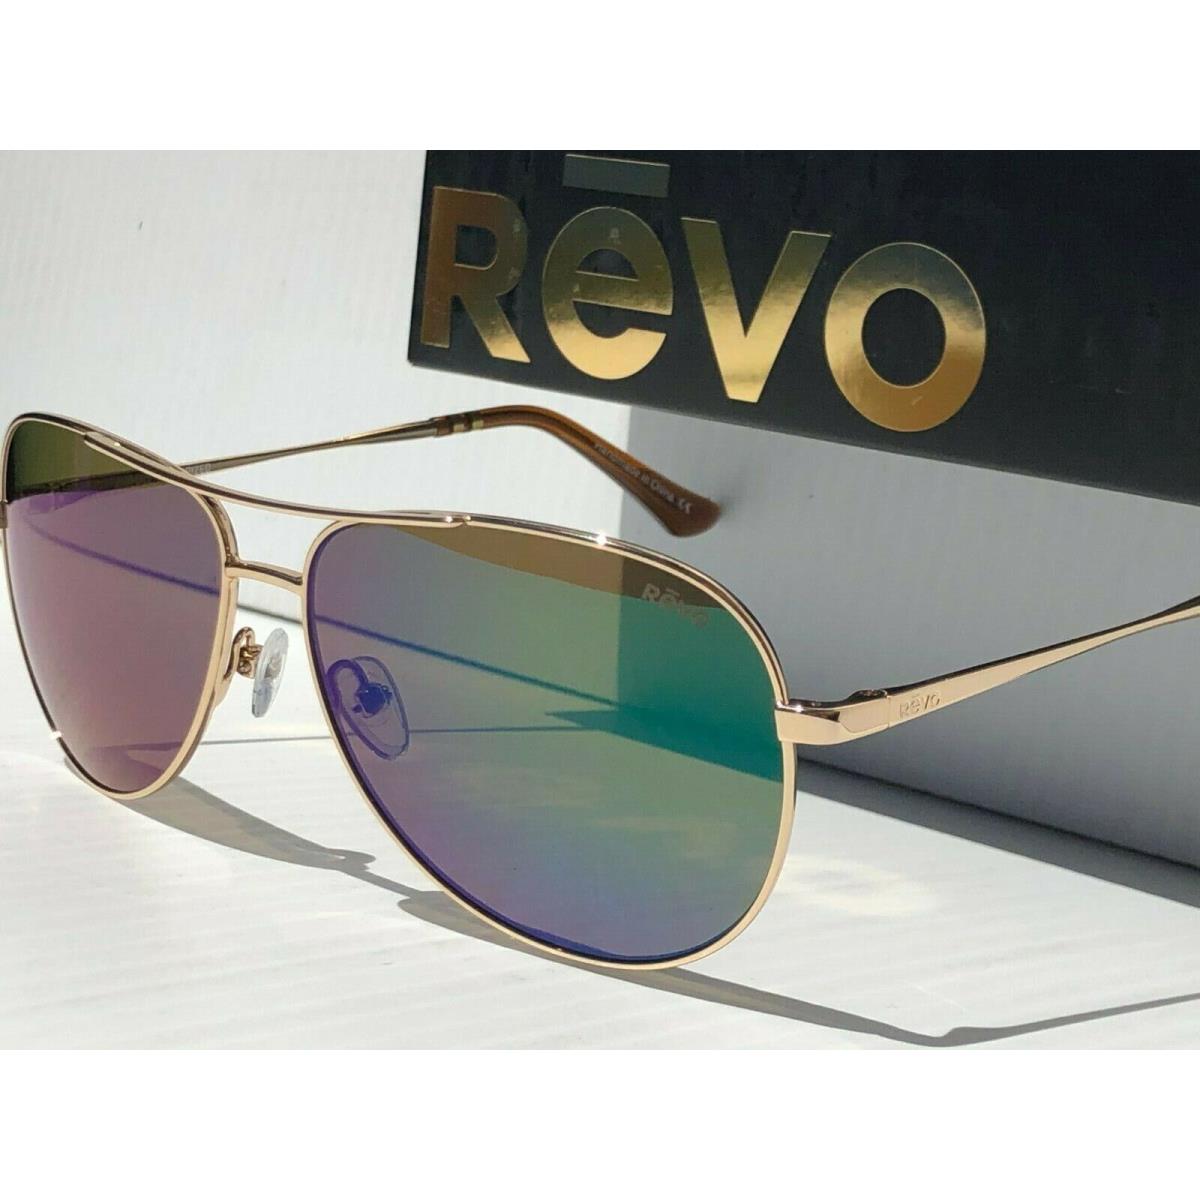 Revo sunglasses SALLY HERSHBERGER - Gold Frame, Green Lens